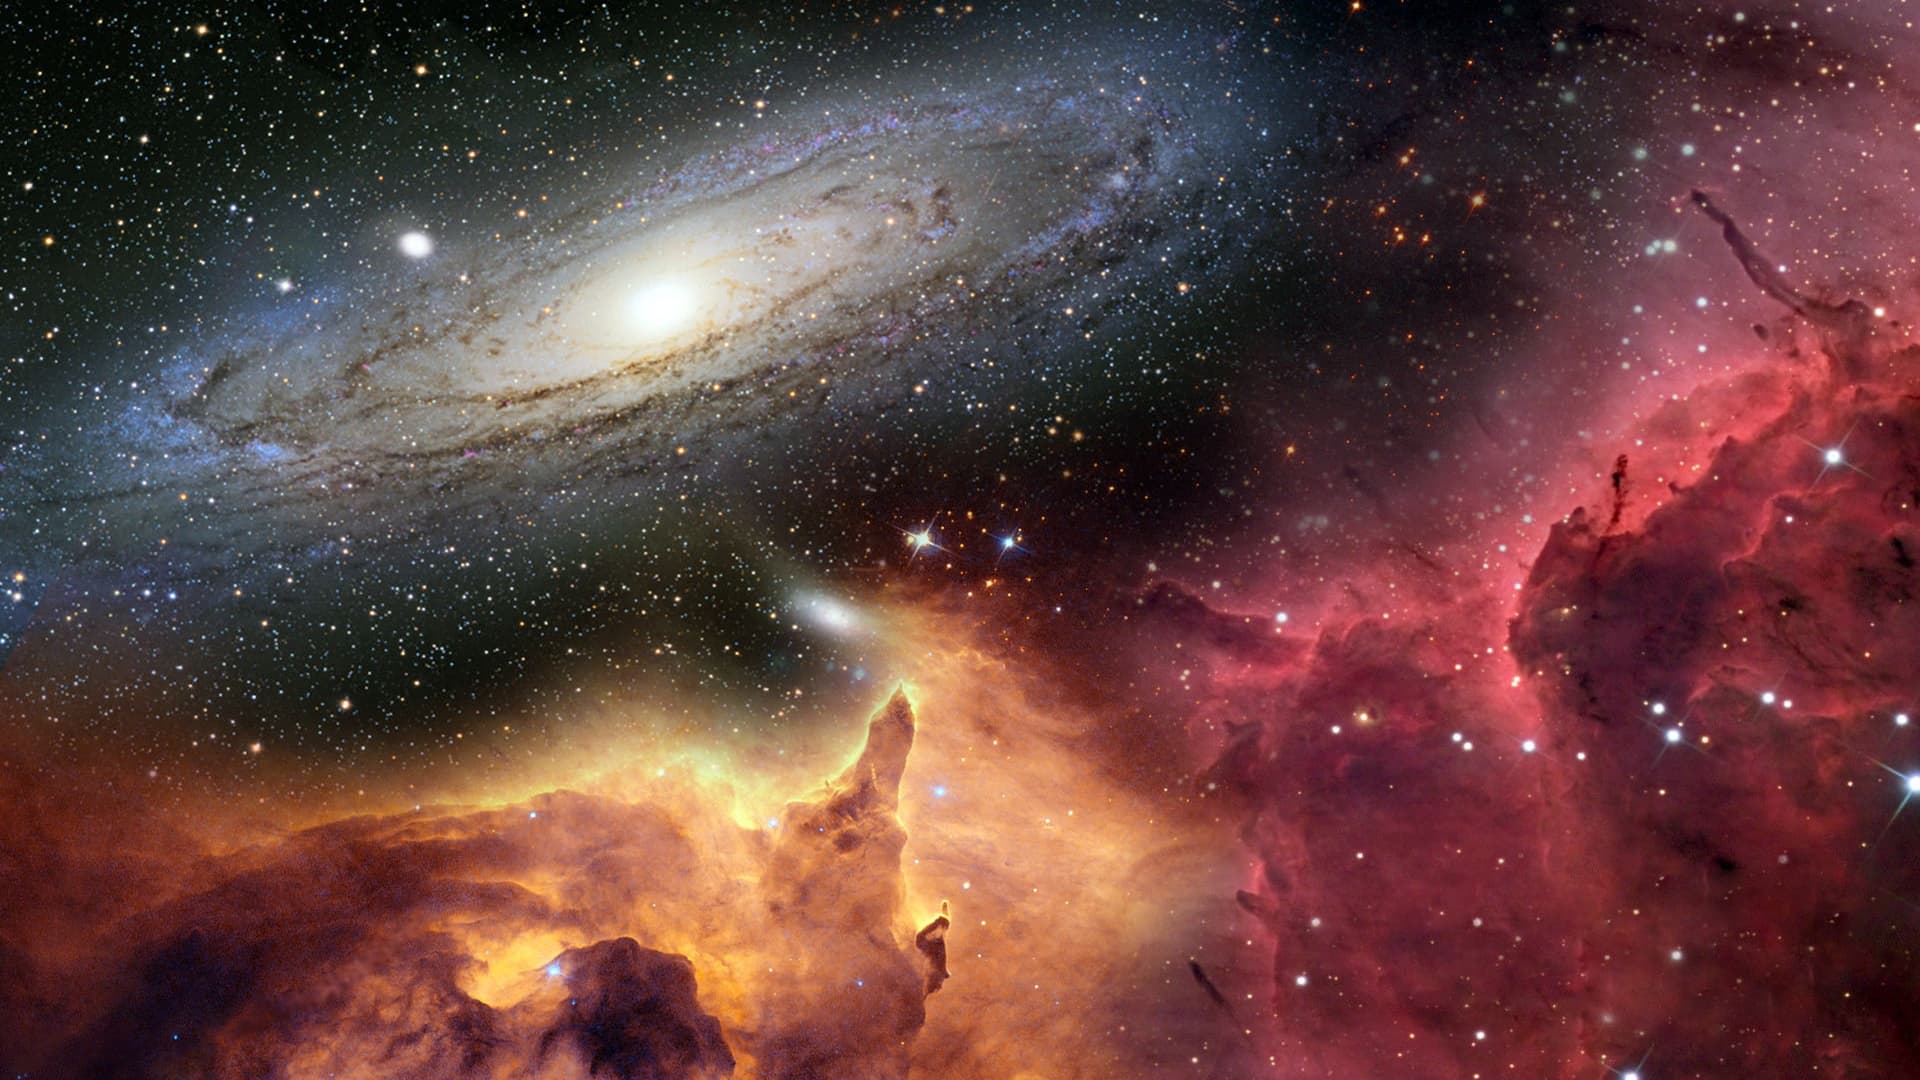 Обои галактика туманность гора звезды картинки на рабочий стол на тему Космос - скачать скачать